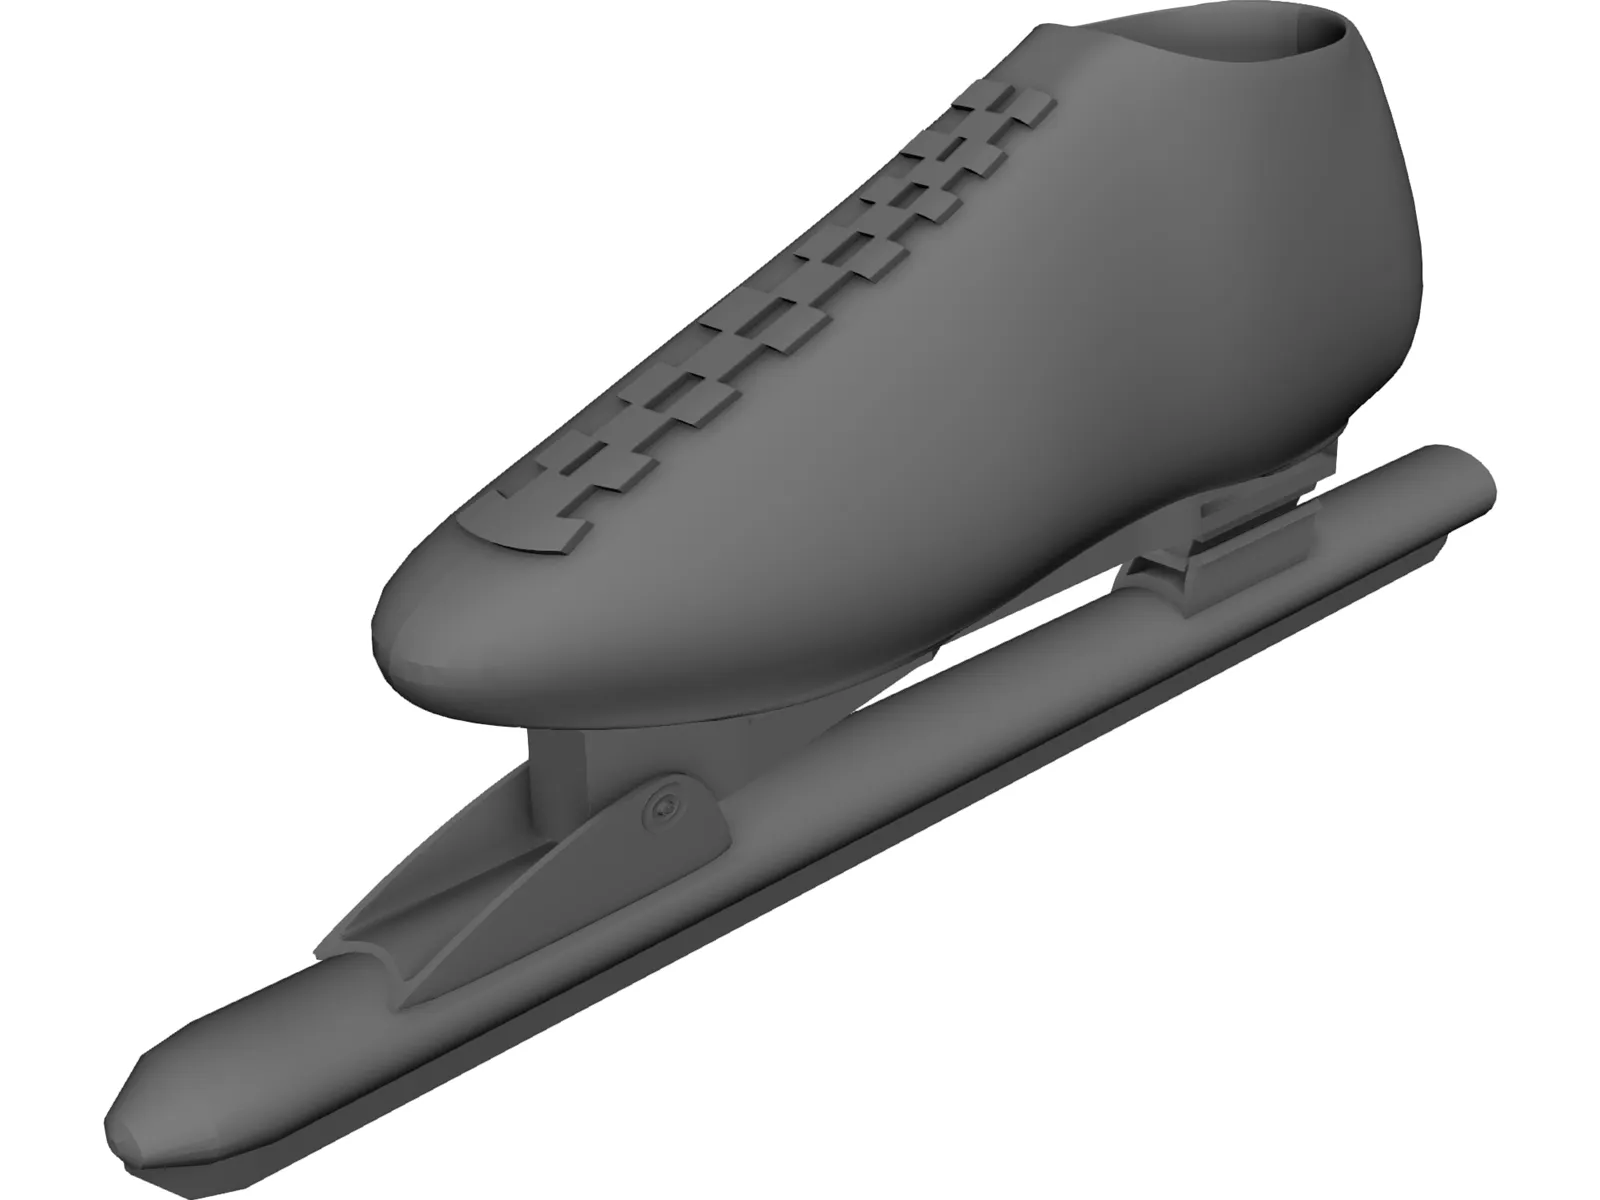 Olympic Colapse Skate 3D Model